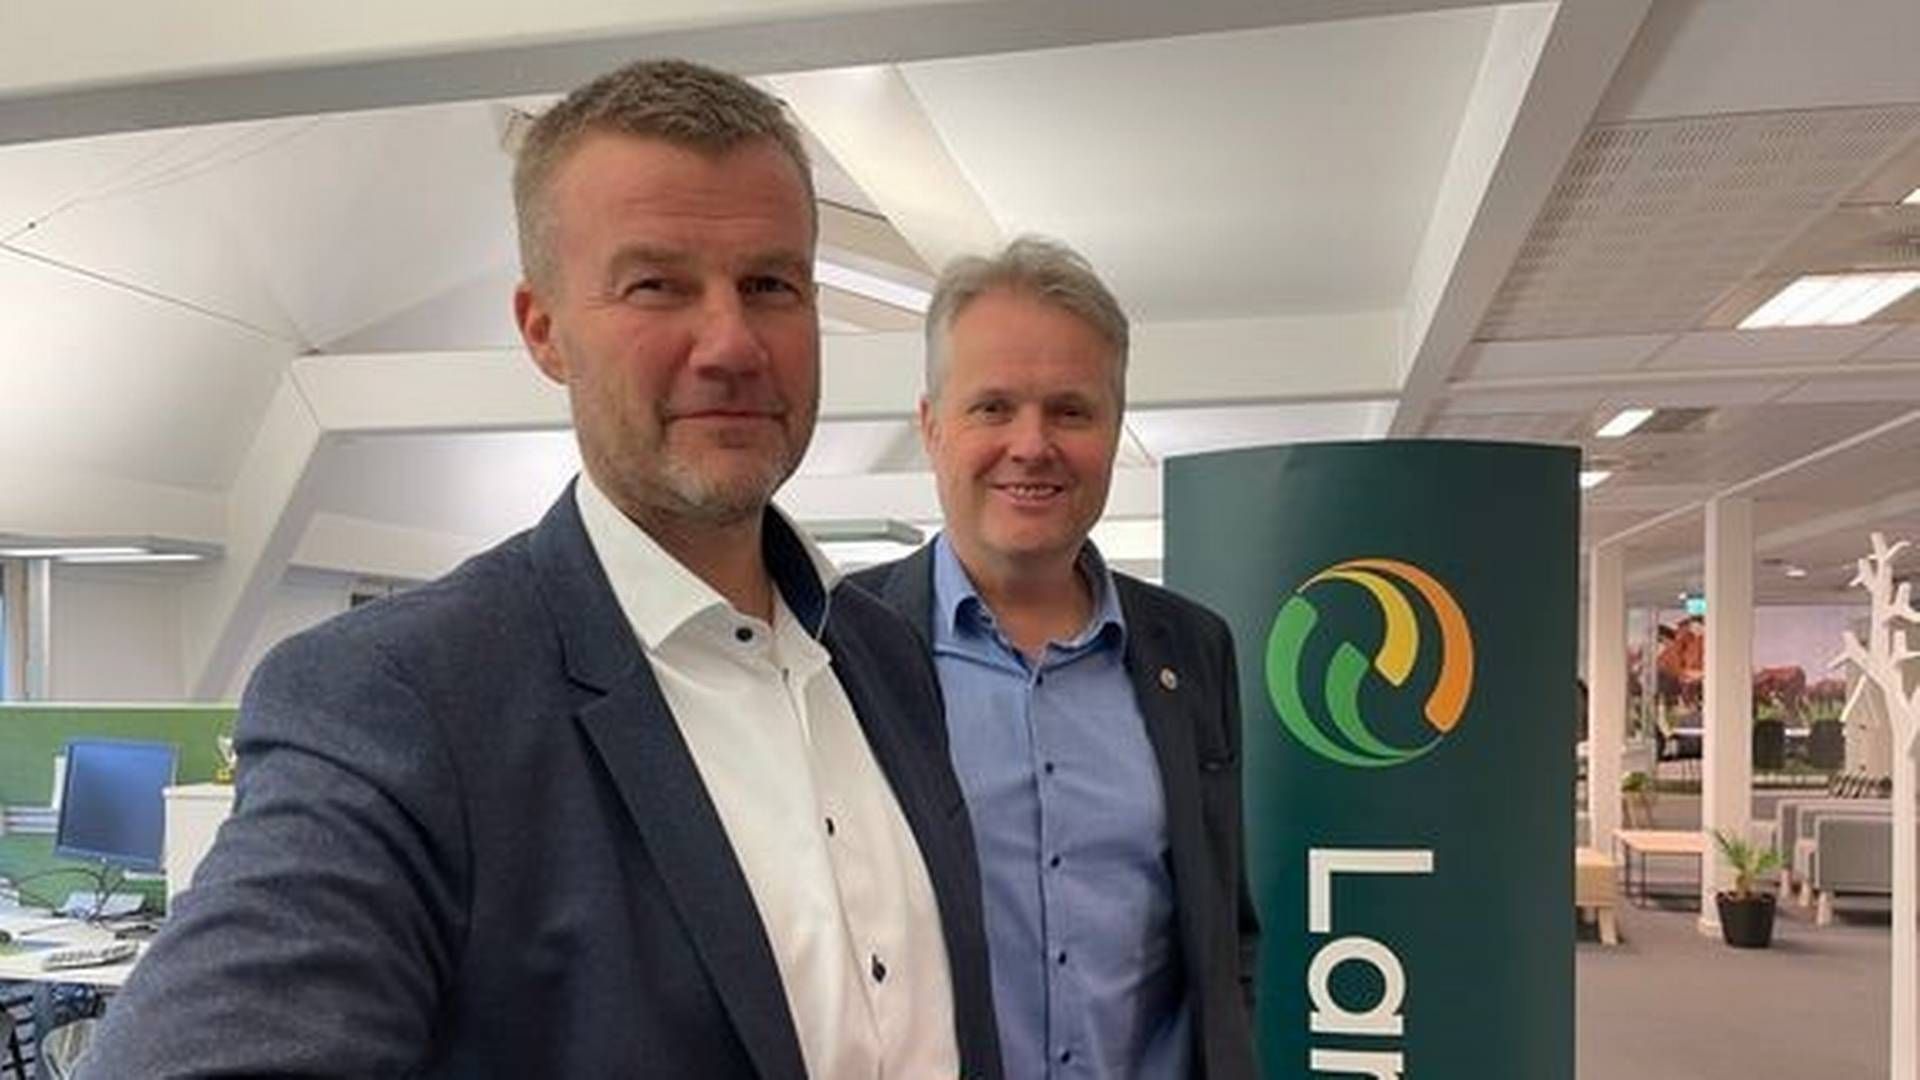 Konsernsjef i Landkreditt, Ole Laurits Lønnum, kutter utlånsrenta med mål om å skape økt vekst og fornøyde kunder. | Foto: Landkreditt.